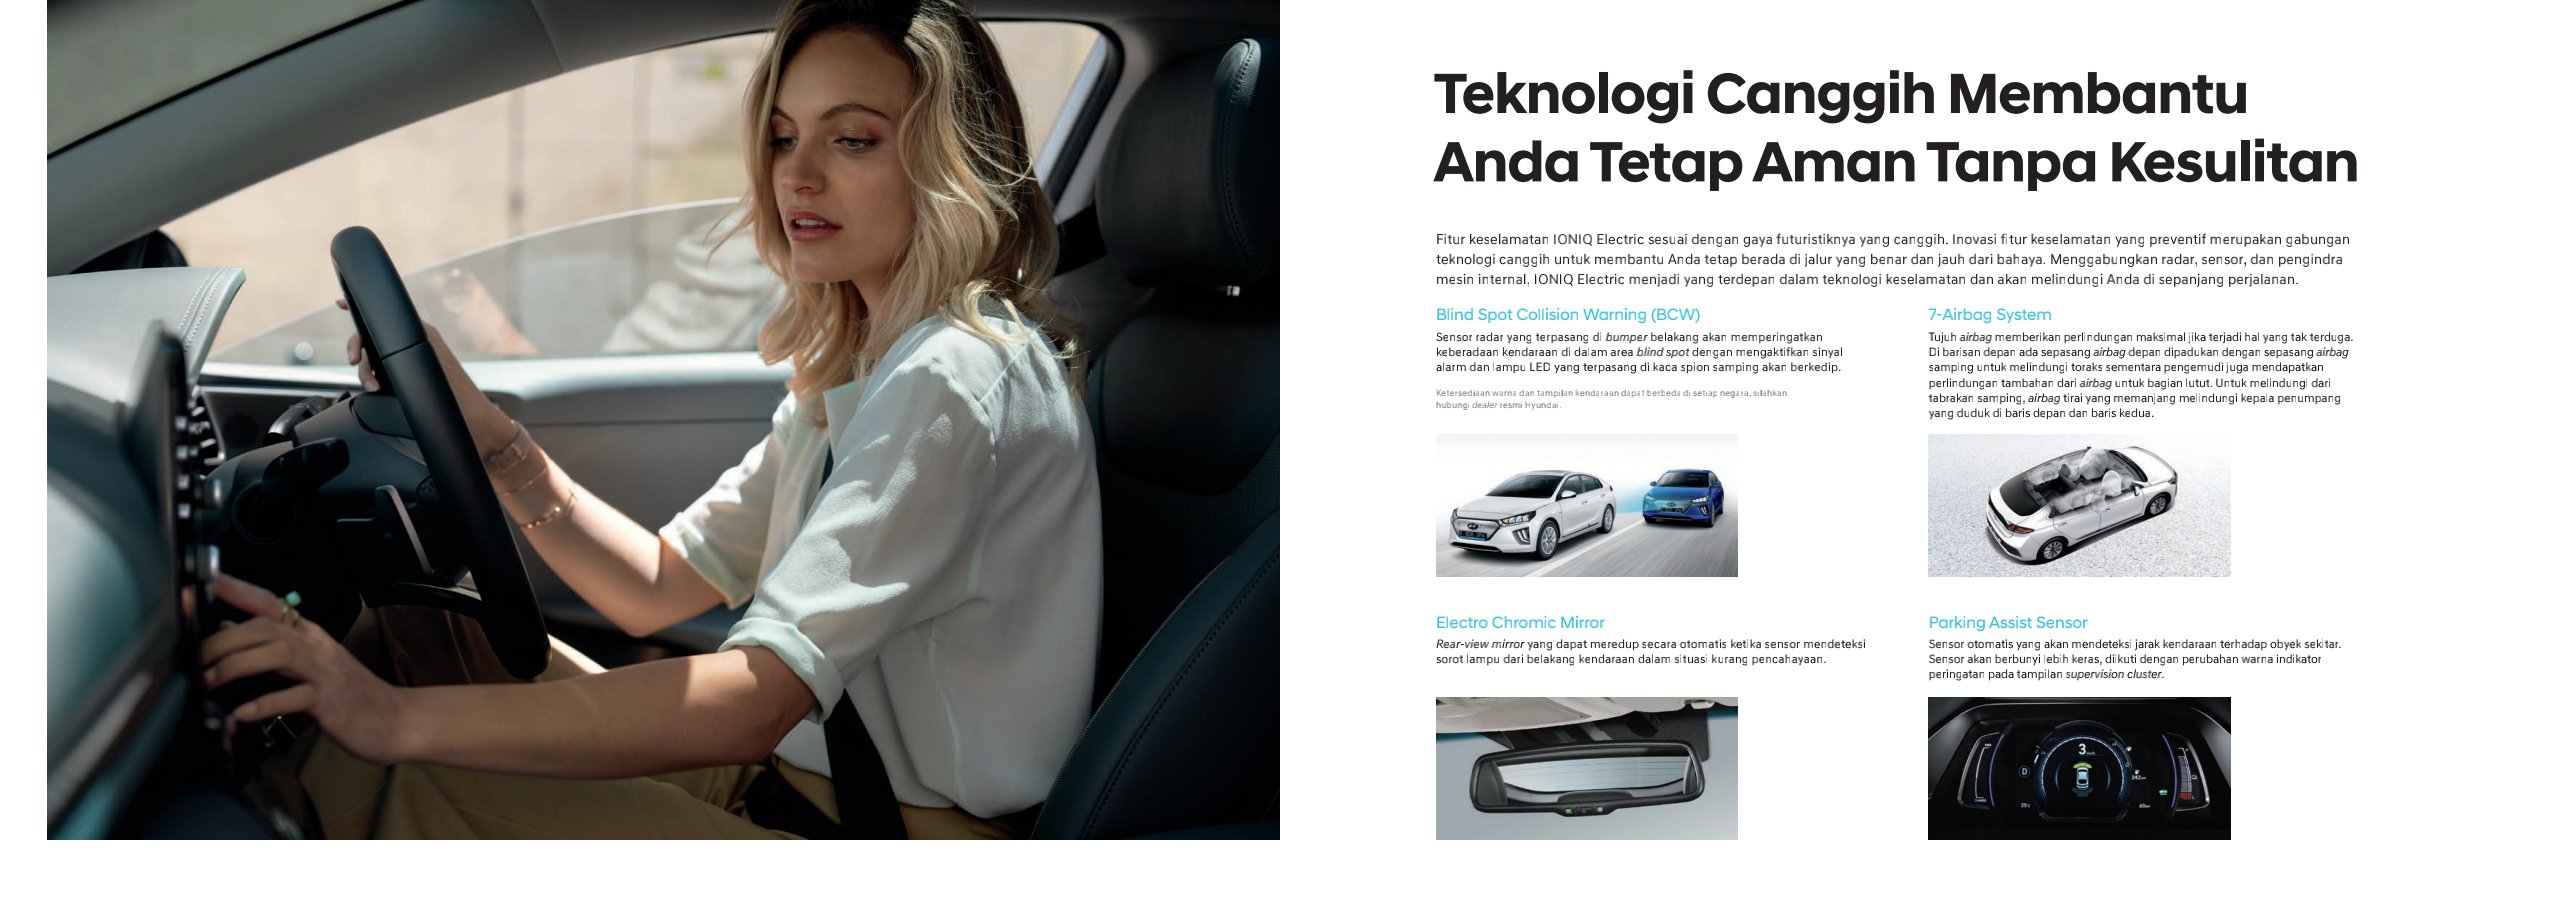 Hyundai Ioniq Indonesia Promo Harga Kredit Tukar Tambah Mobil Baru